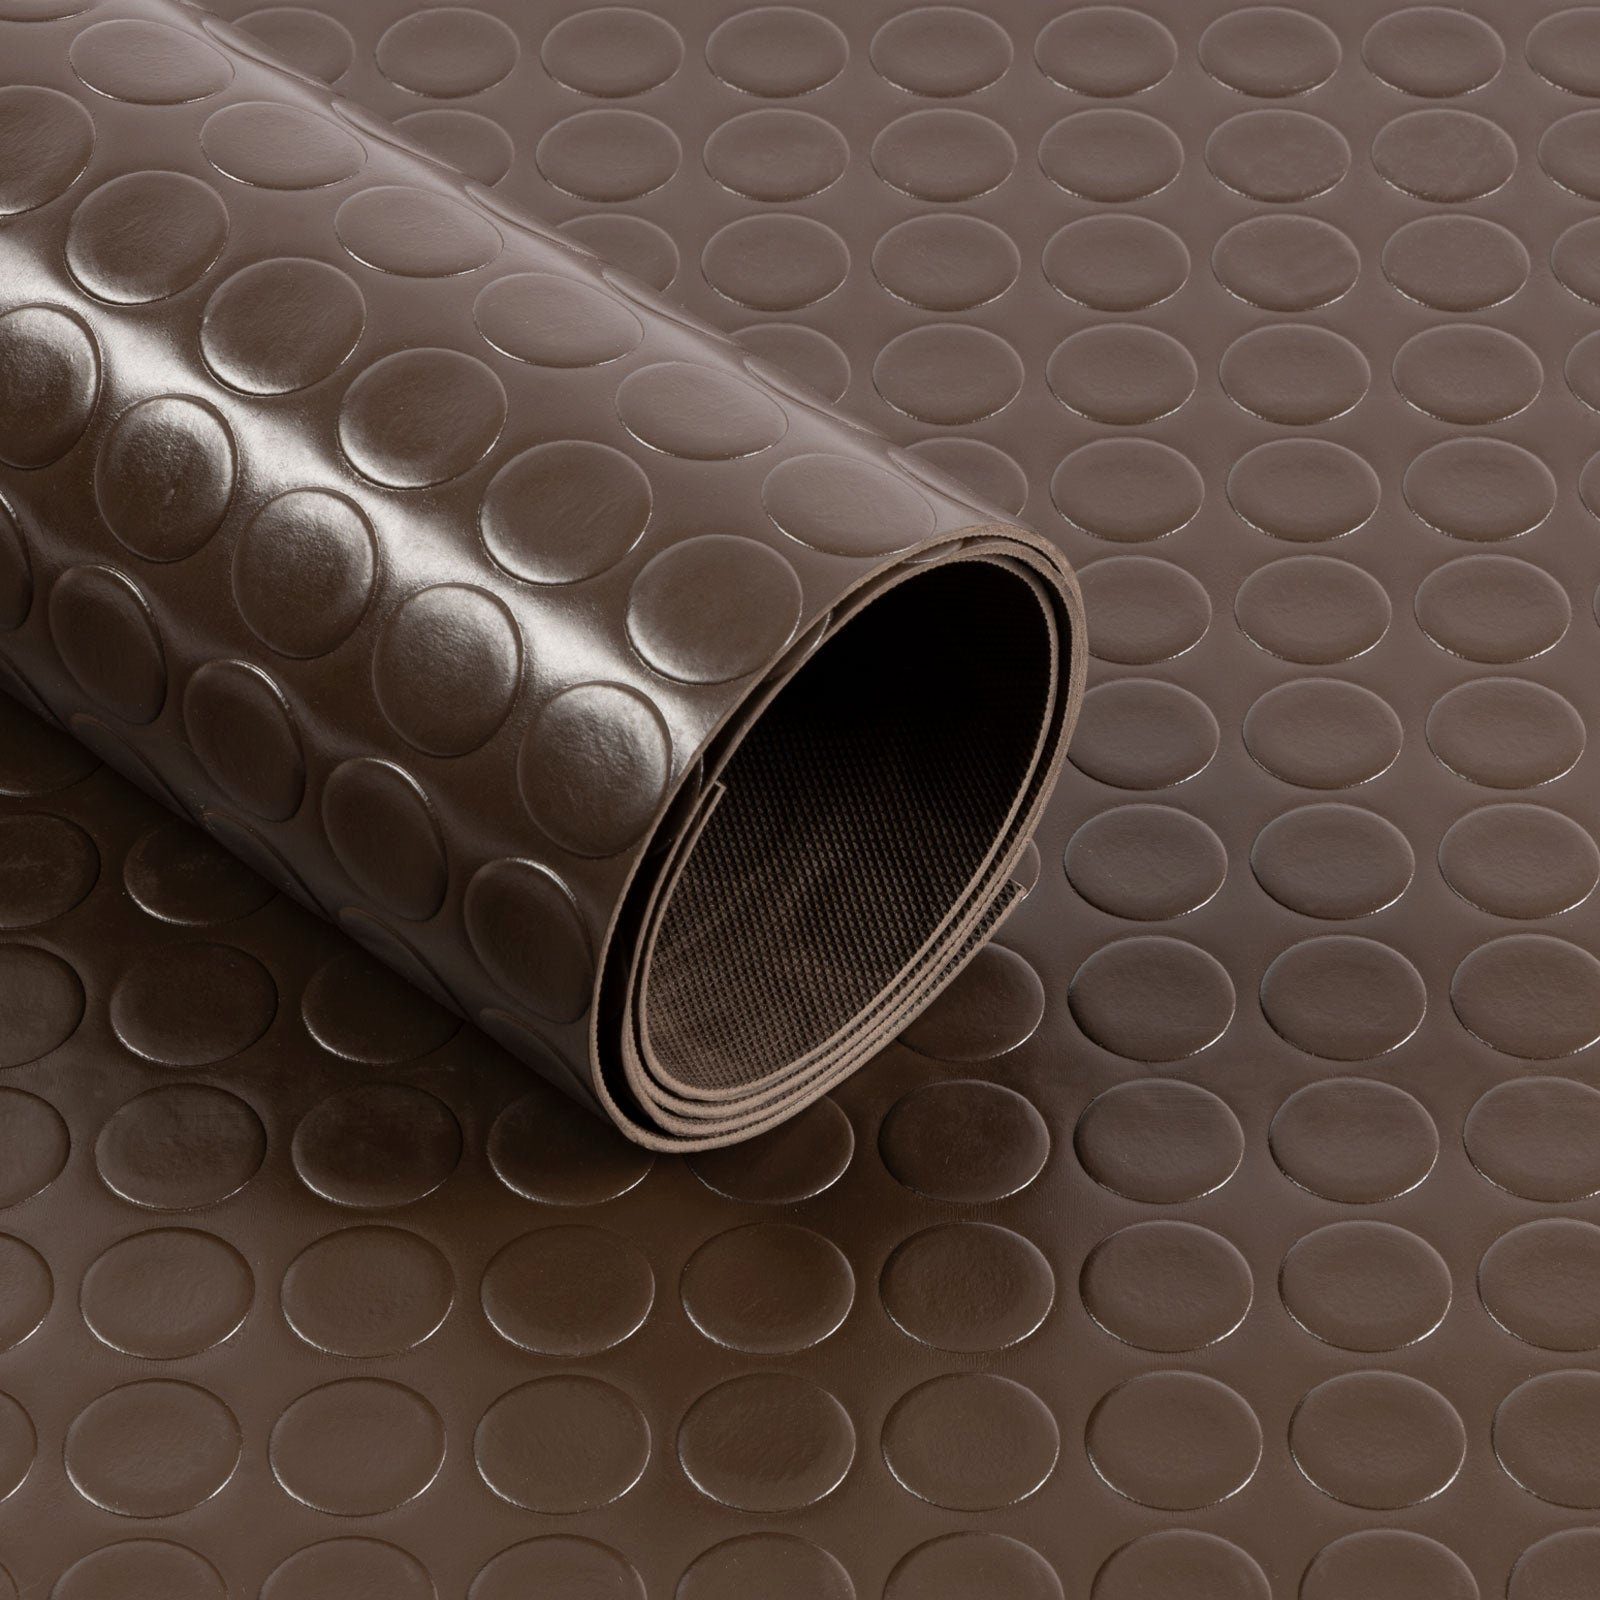 Kubus Bodenschutzmatte PVC-Bodenbelag, Große Stärke Farben viele Braun 2mm, Noppen